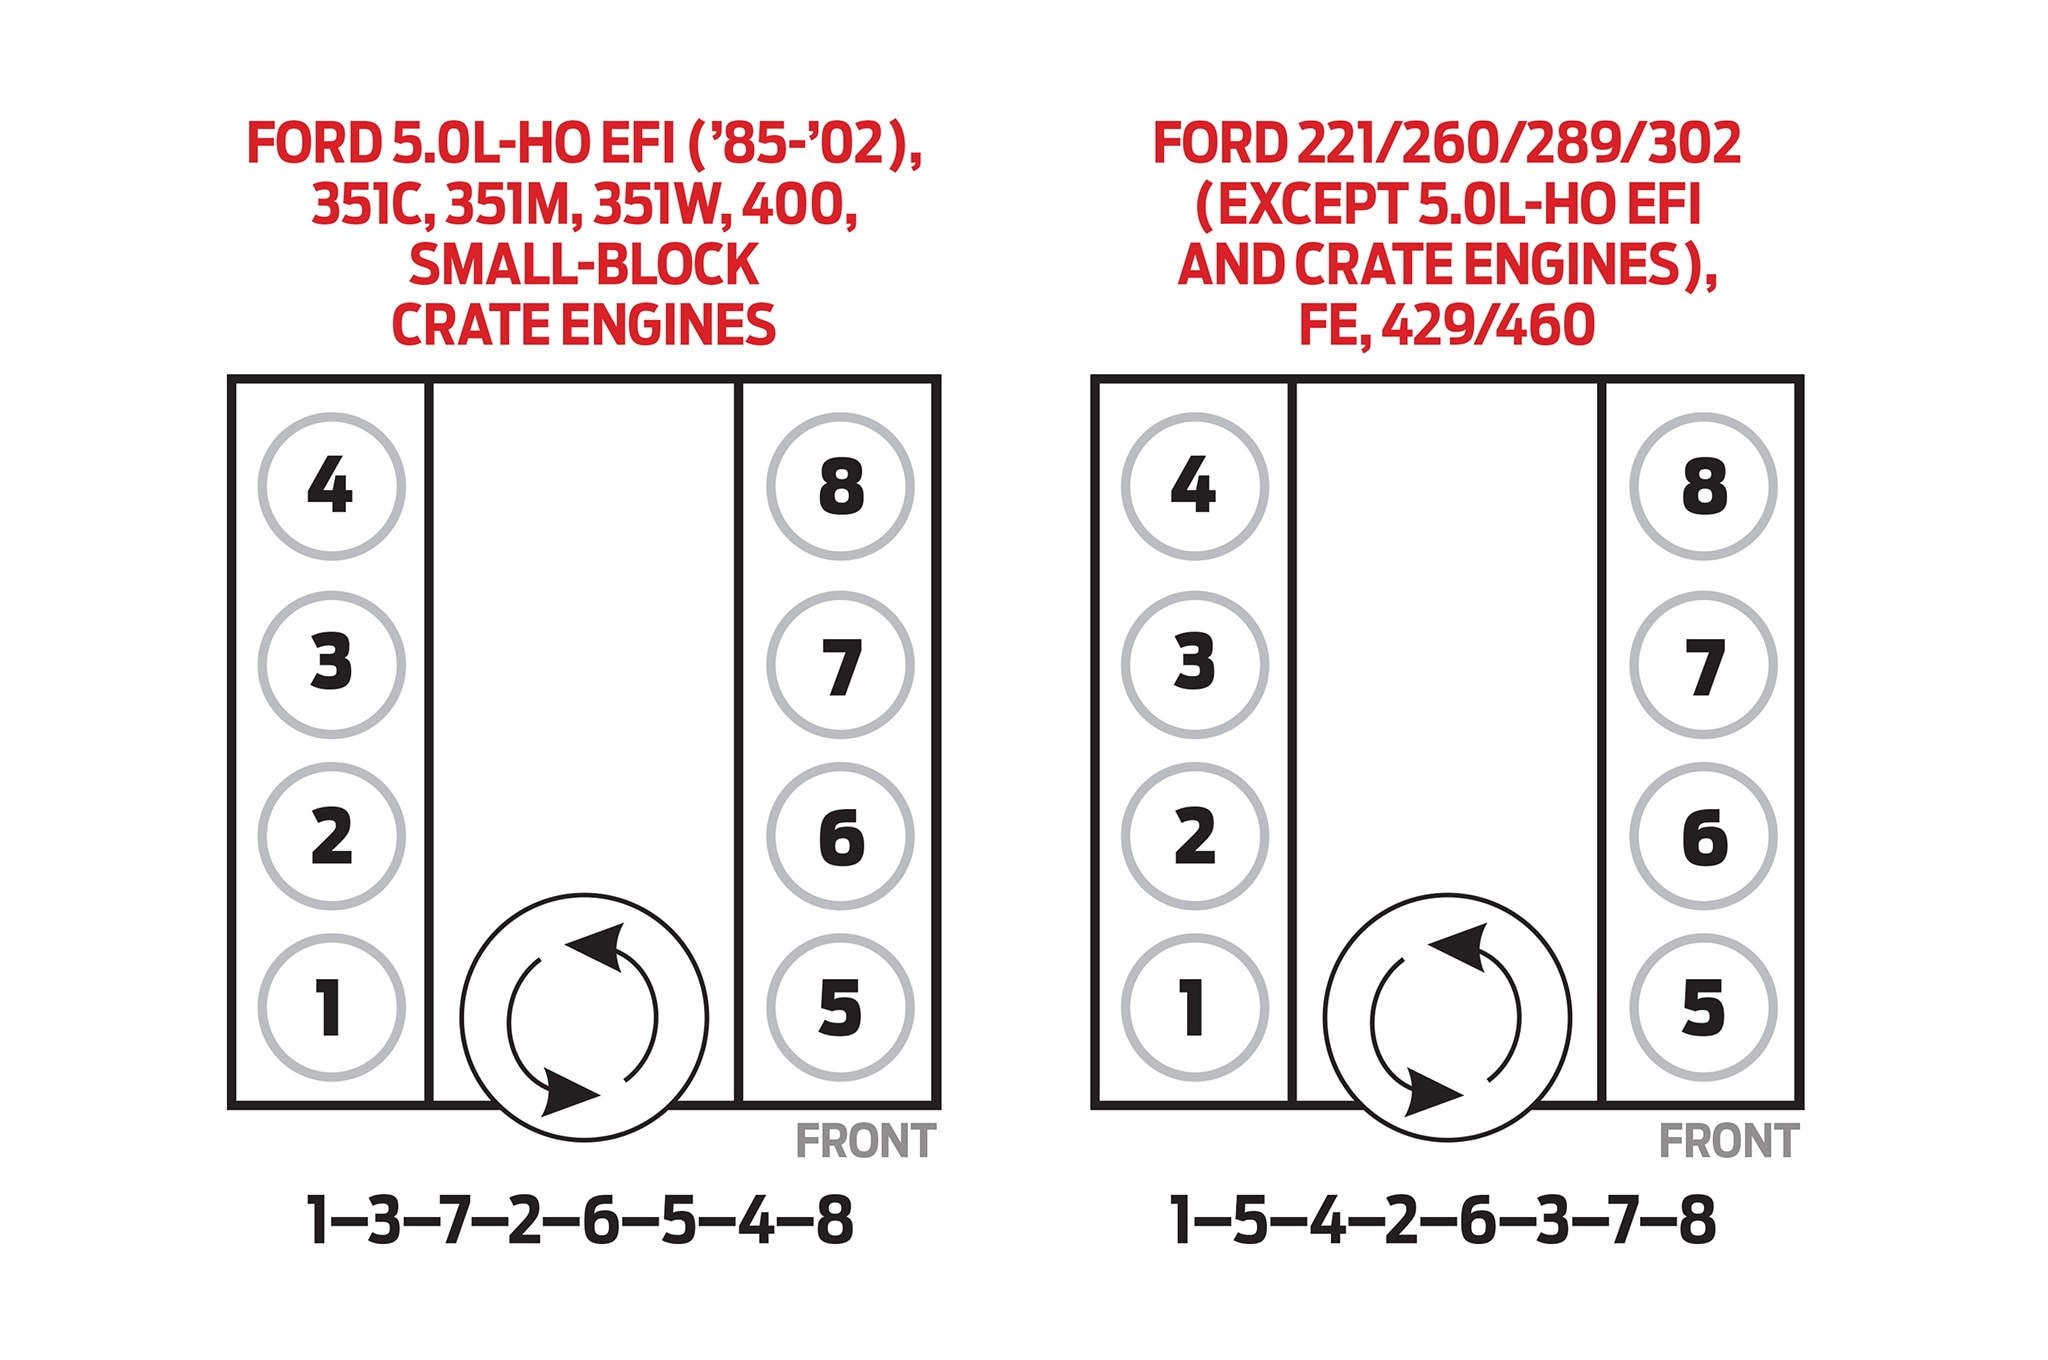 Wrg-7447] Ford 390 Spark Plug Wiring Diagram